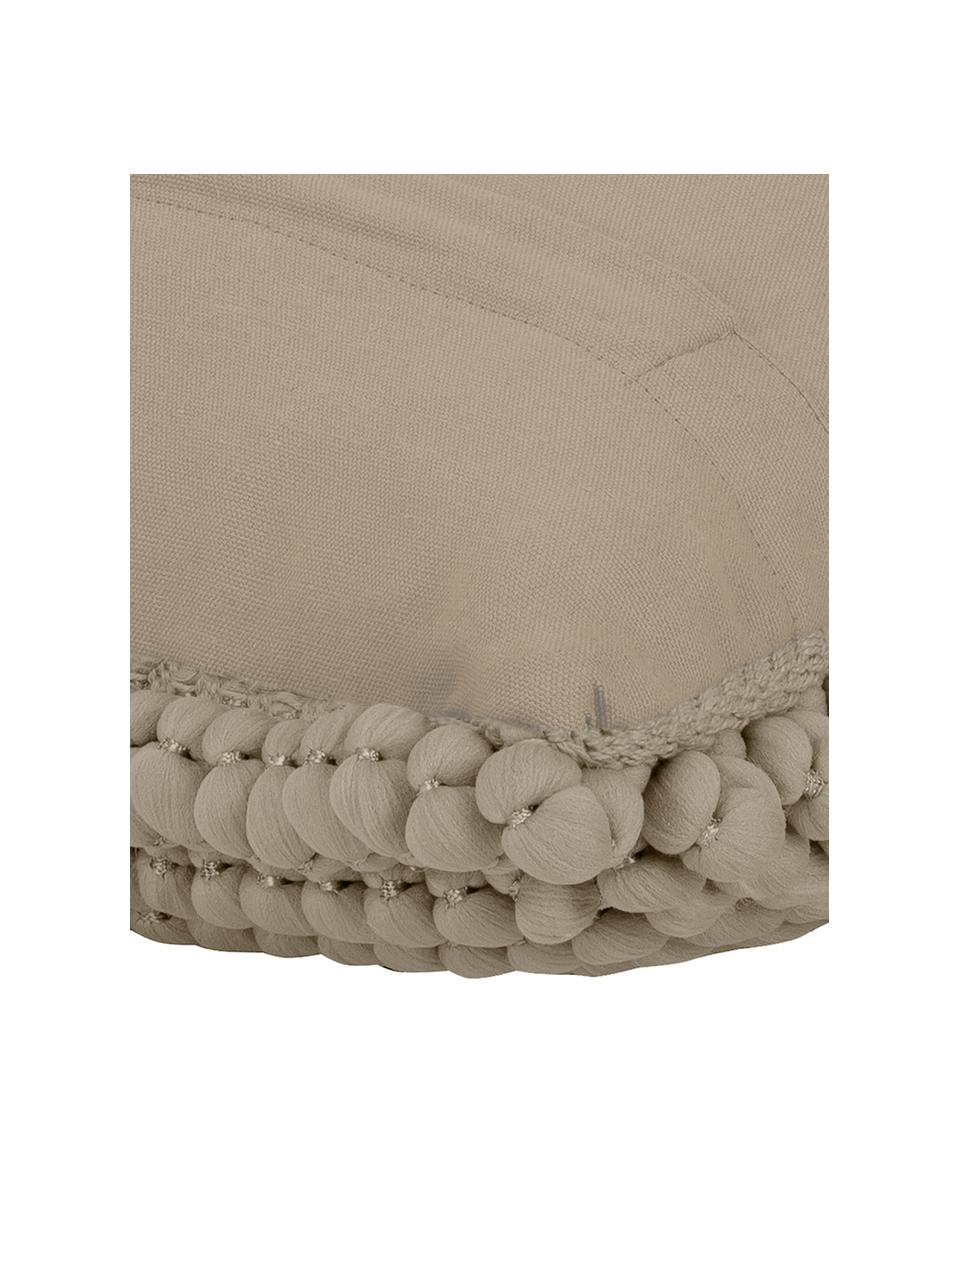 Federa arredo con palline di tessuto beige Iona, Retro: 100% cotone, Marrone chiaro, Larg. 45 x Lung. 45 cm